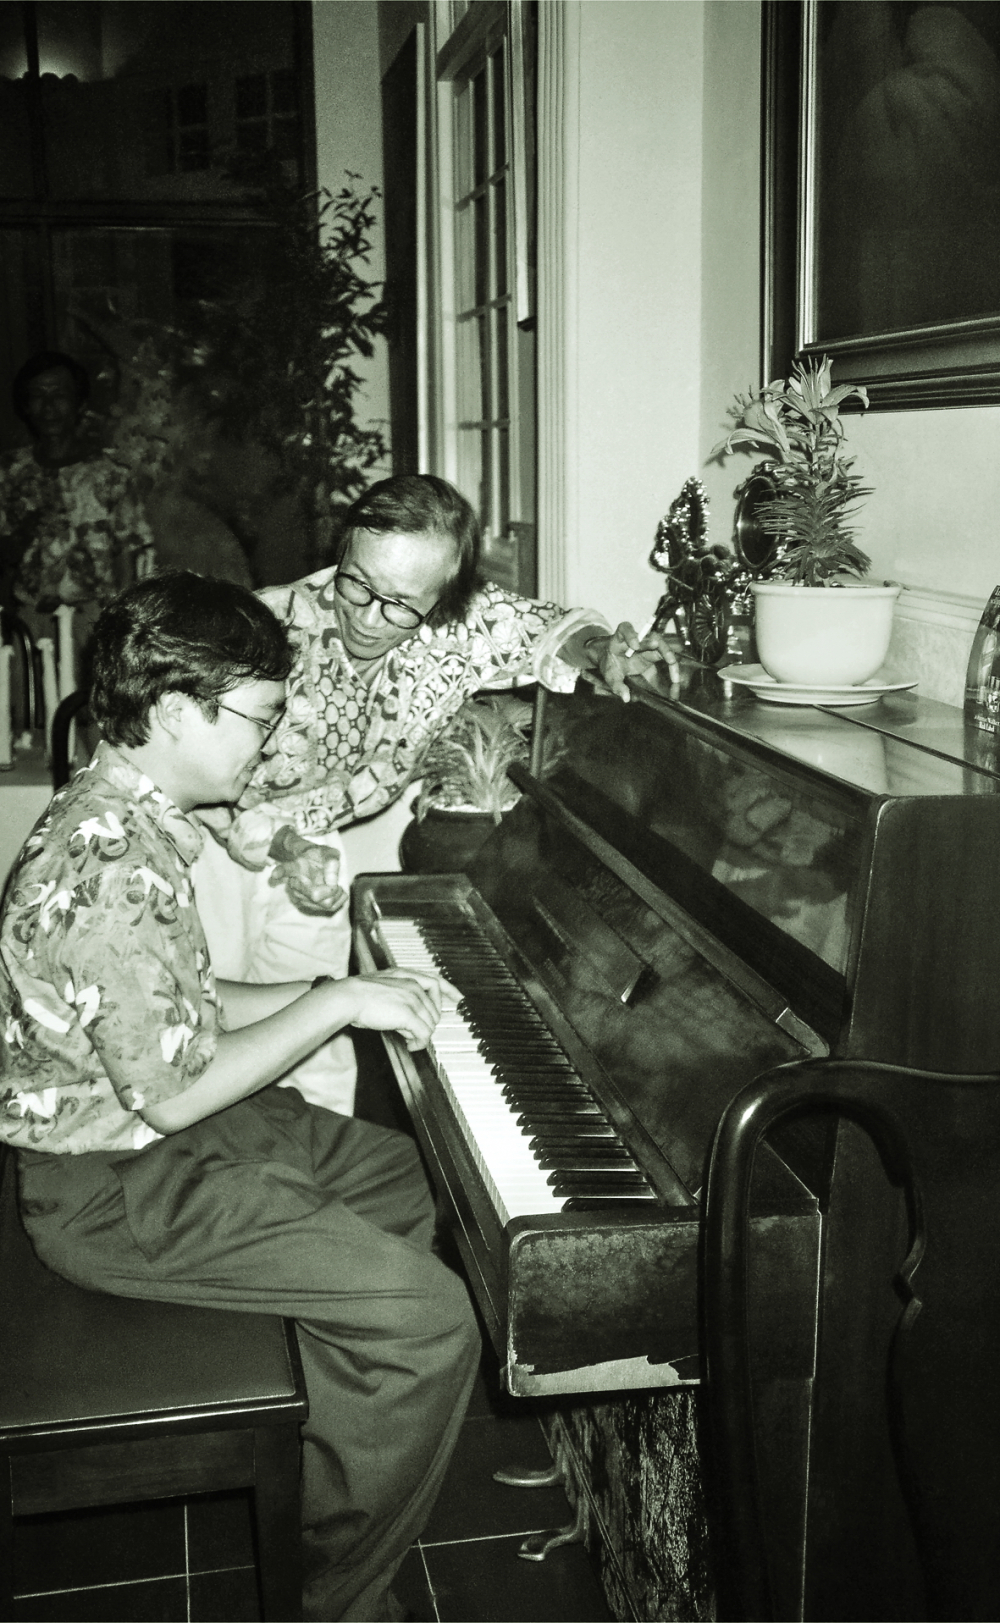 Nhạc sĩ Trịnh Công Sơn chụp cùng nghệ sĩ piano Đặng Thái Sơn tại TPHCM năm 1993 ẢNH: DƯƠNG MINH LONG